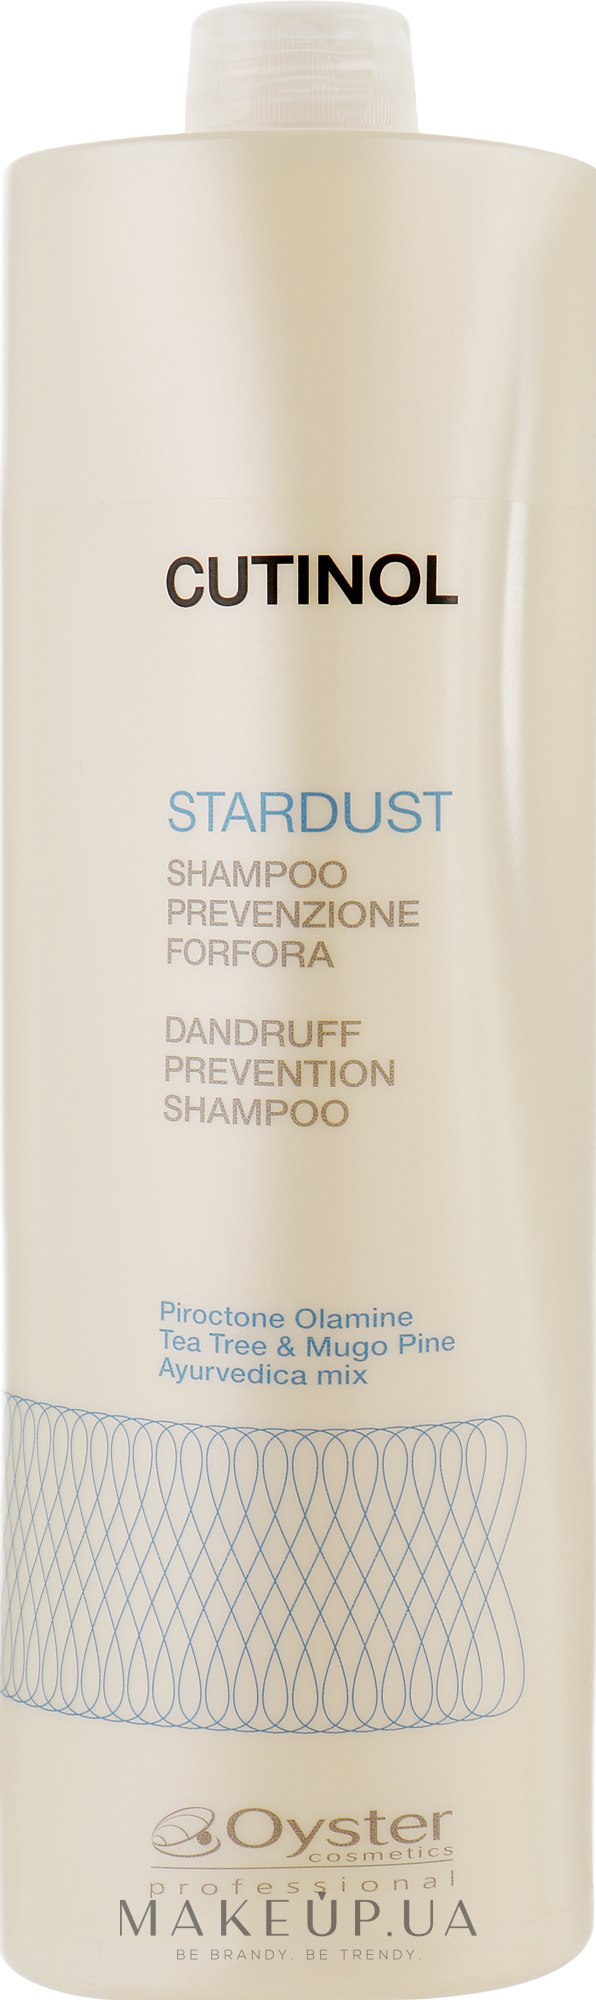 Шампунь проти лупи - Oyster Cosmetics Cutinol Stardust Shampoo — фото 1000ml